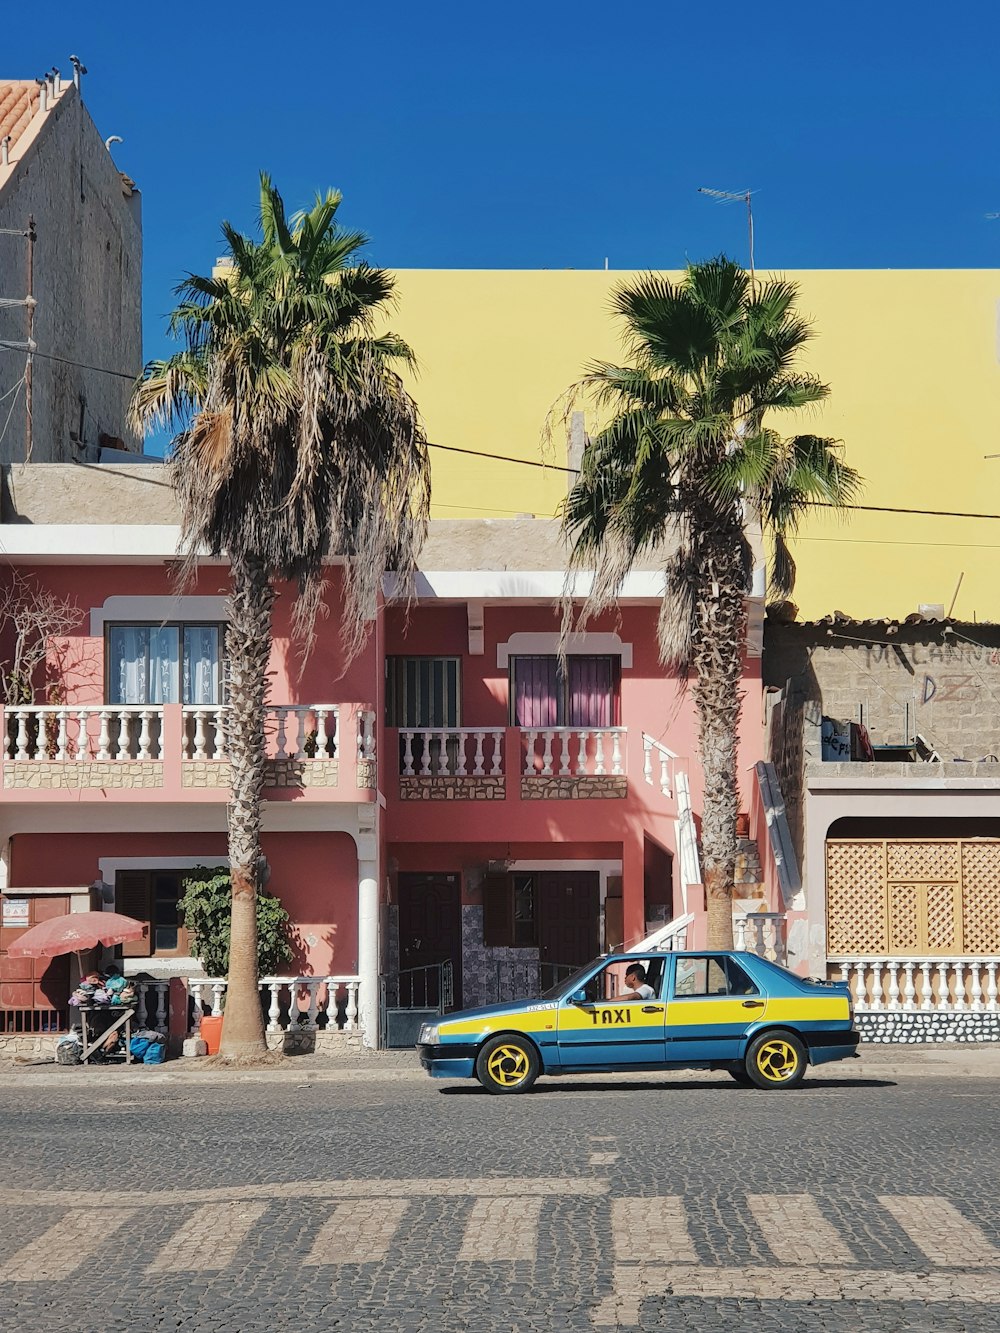 Blaues und gelbes Taxi in der Nähe von Palme geparkt